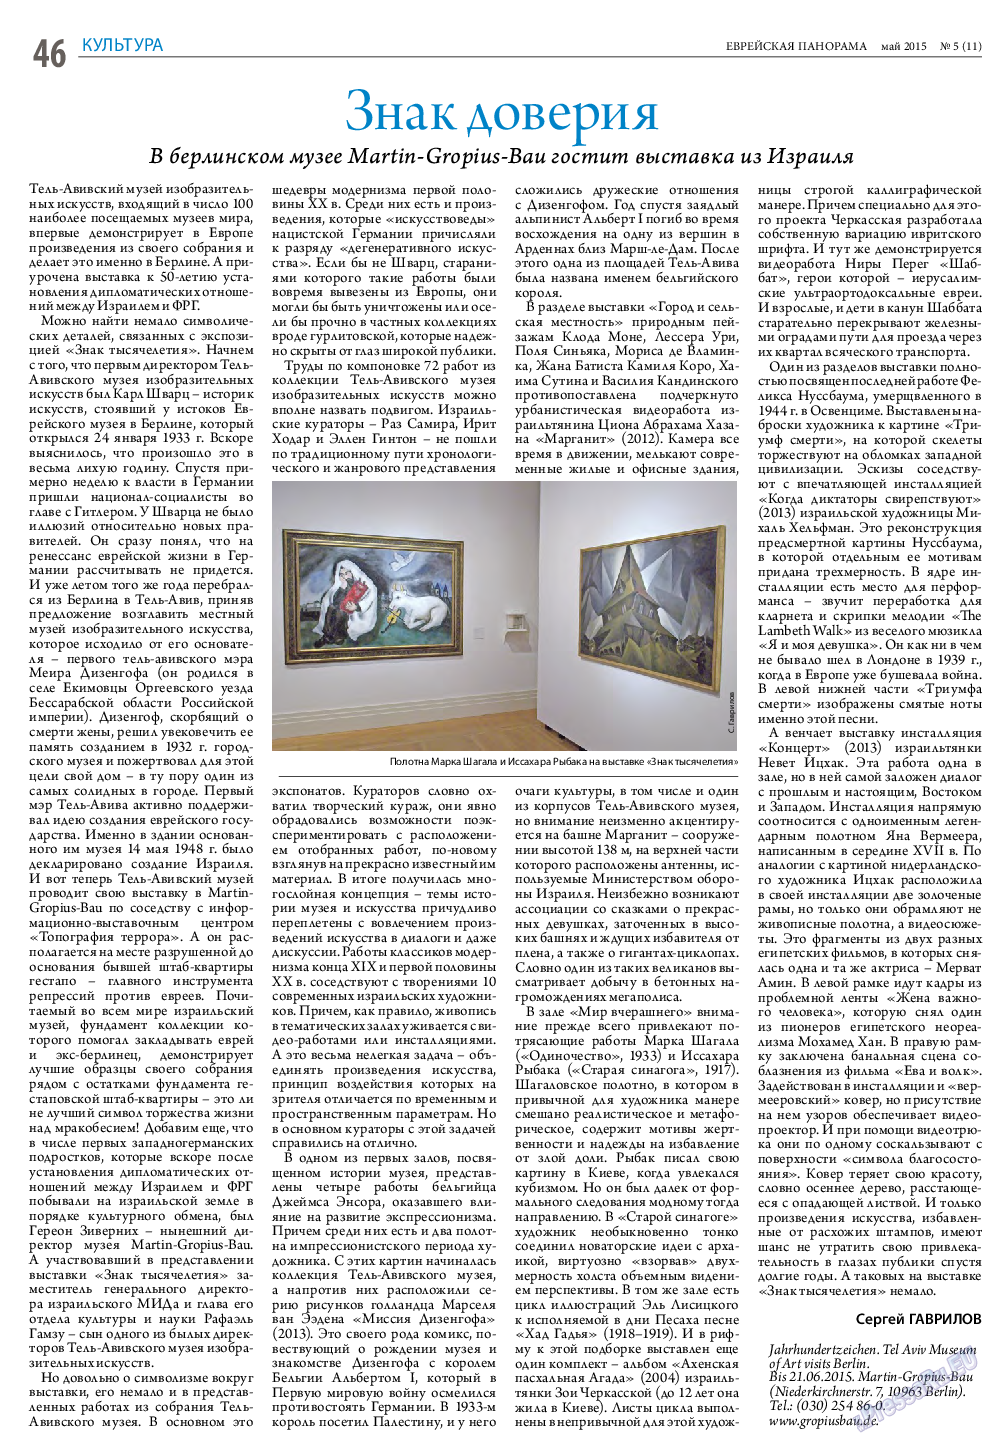 Еврейская панорама (газета). 2015 год, номер 5, стр. 46